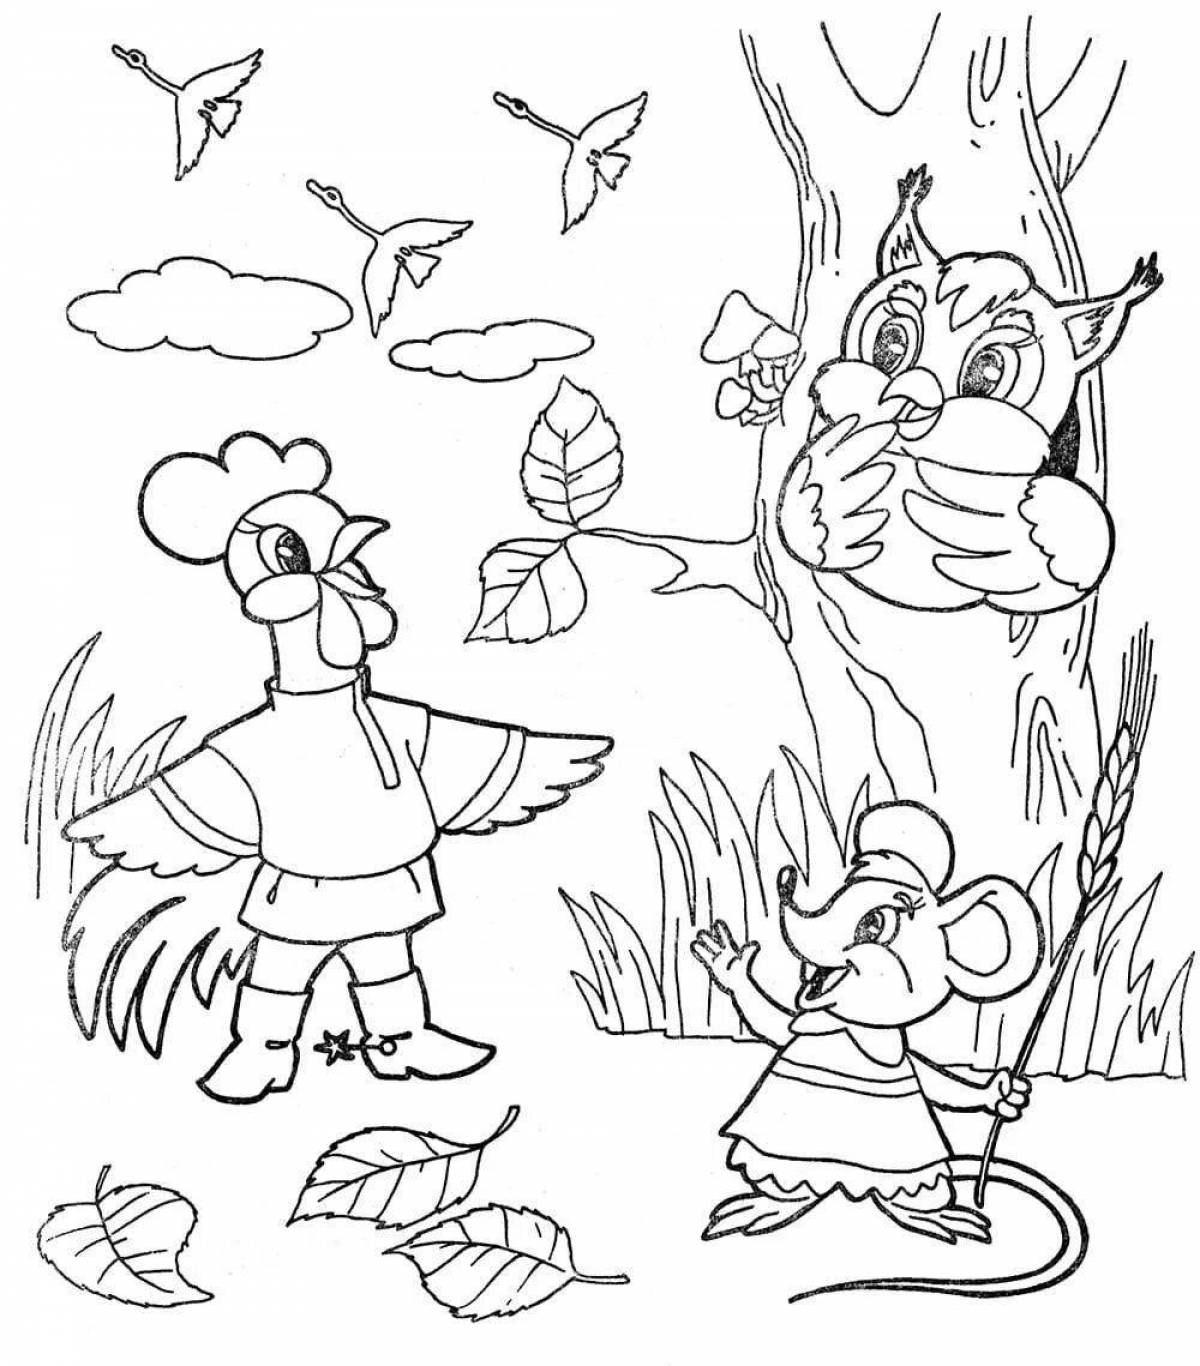 Сказочная история-раскраска для детей 4-5 лет